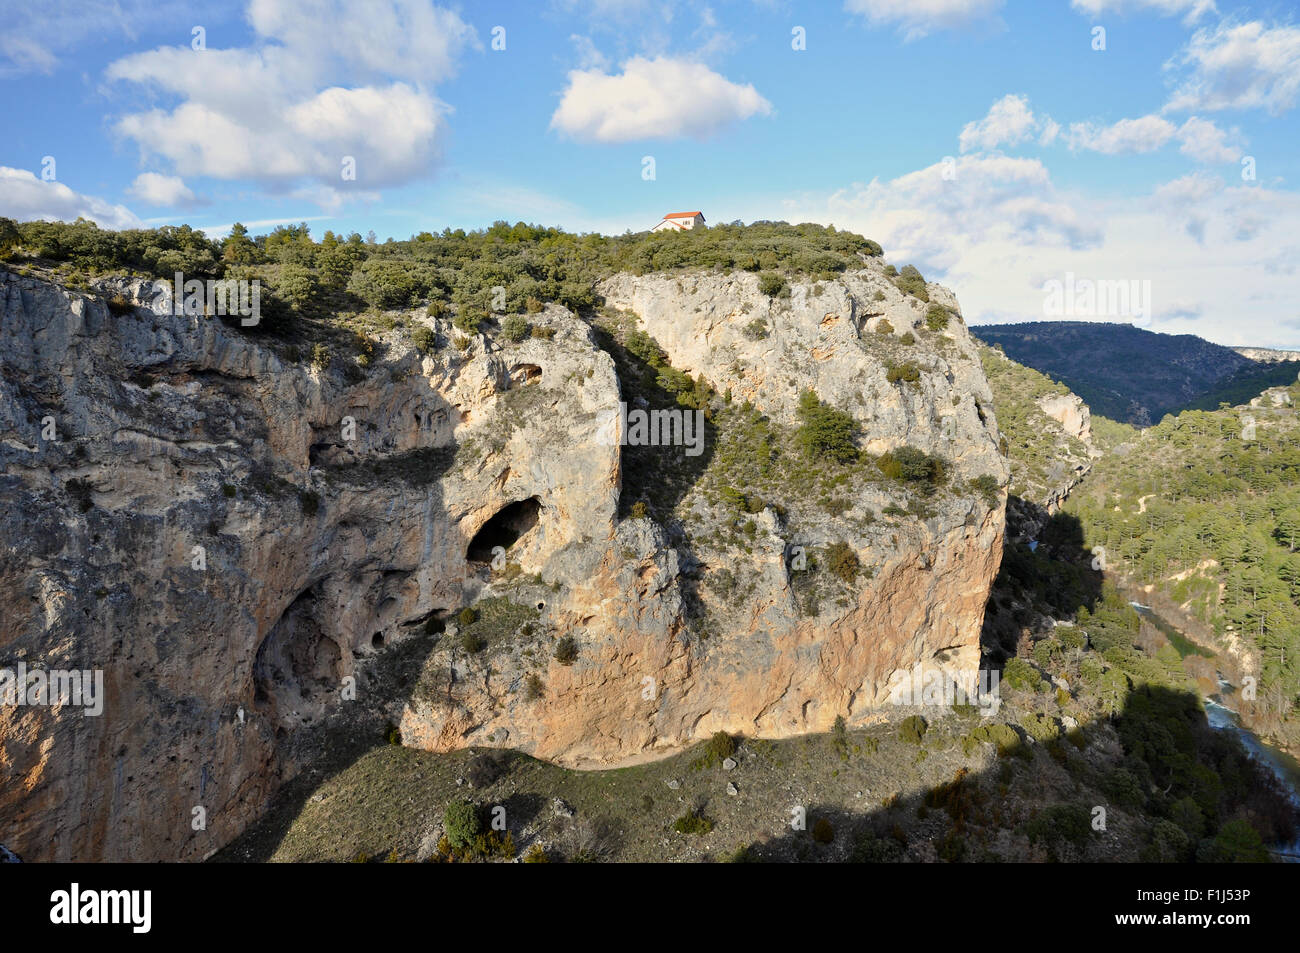 Vista panoramica dal punto panoramico di Ventano del Diablo che mostra una burrone con il fiume Jucar in fondo (Villalba de la Sierra, Cuenca, Castilla-la Mancha, Spagna) Foto Stock